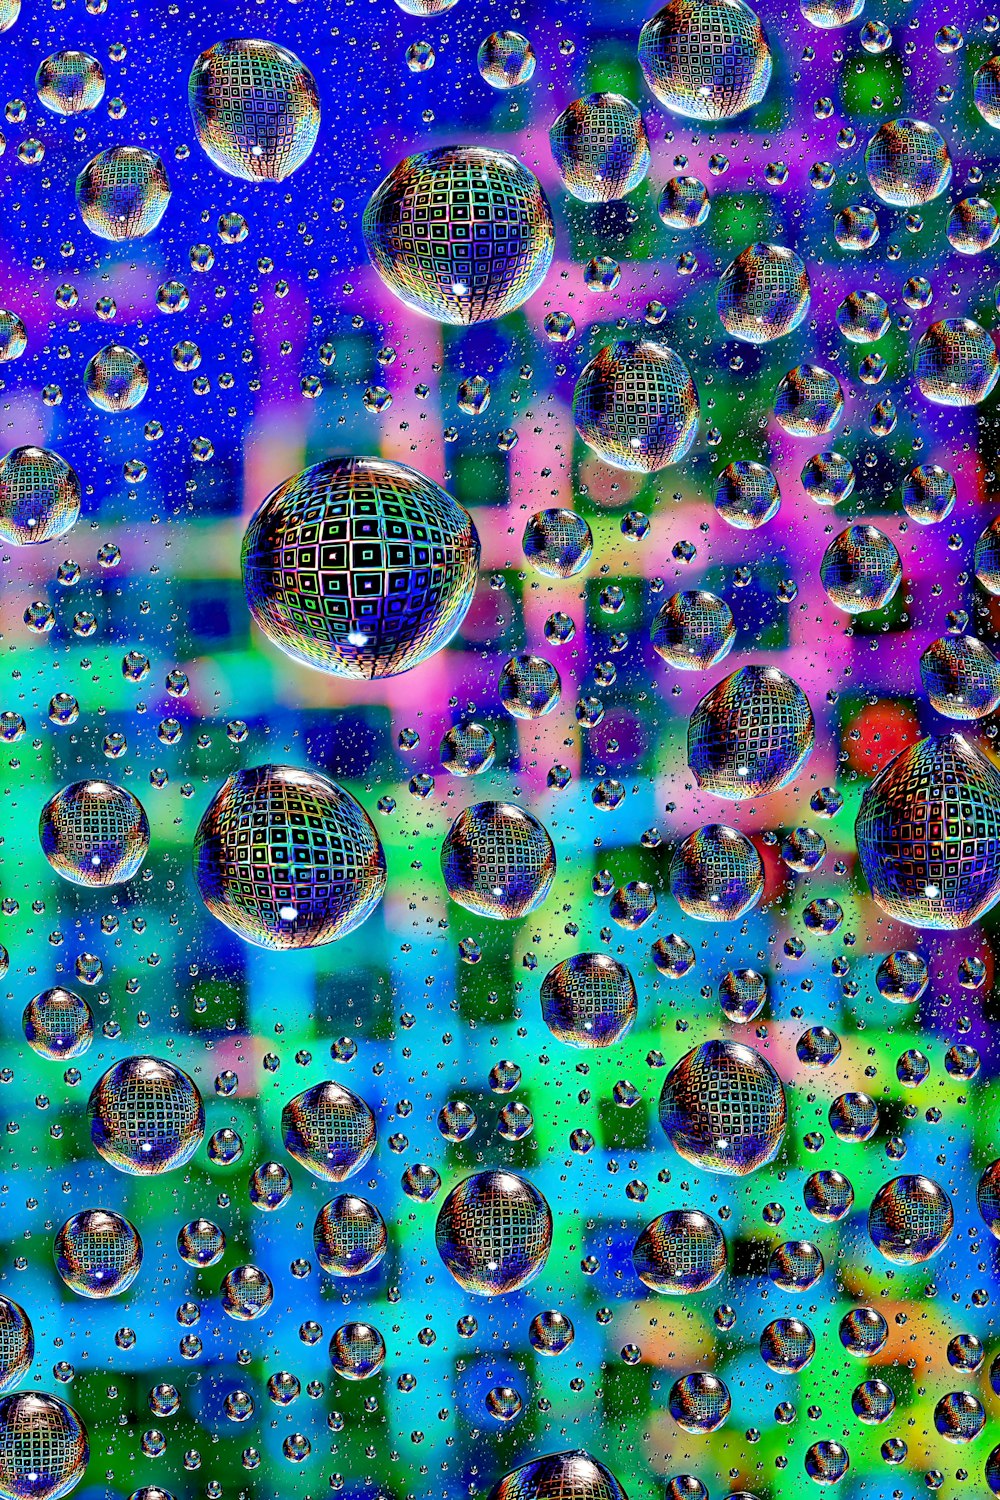 un gruppo di bolle che galleggiano su una superficie blu e verde